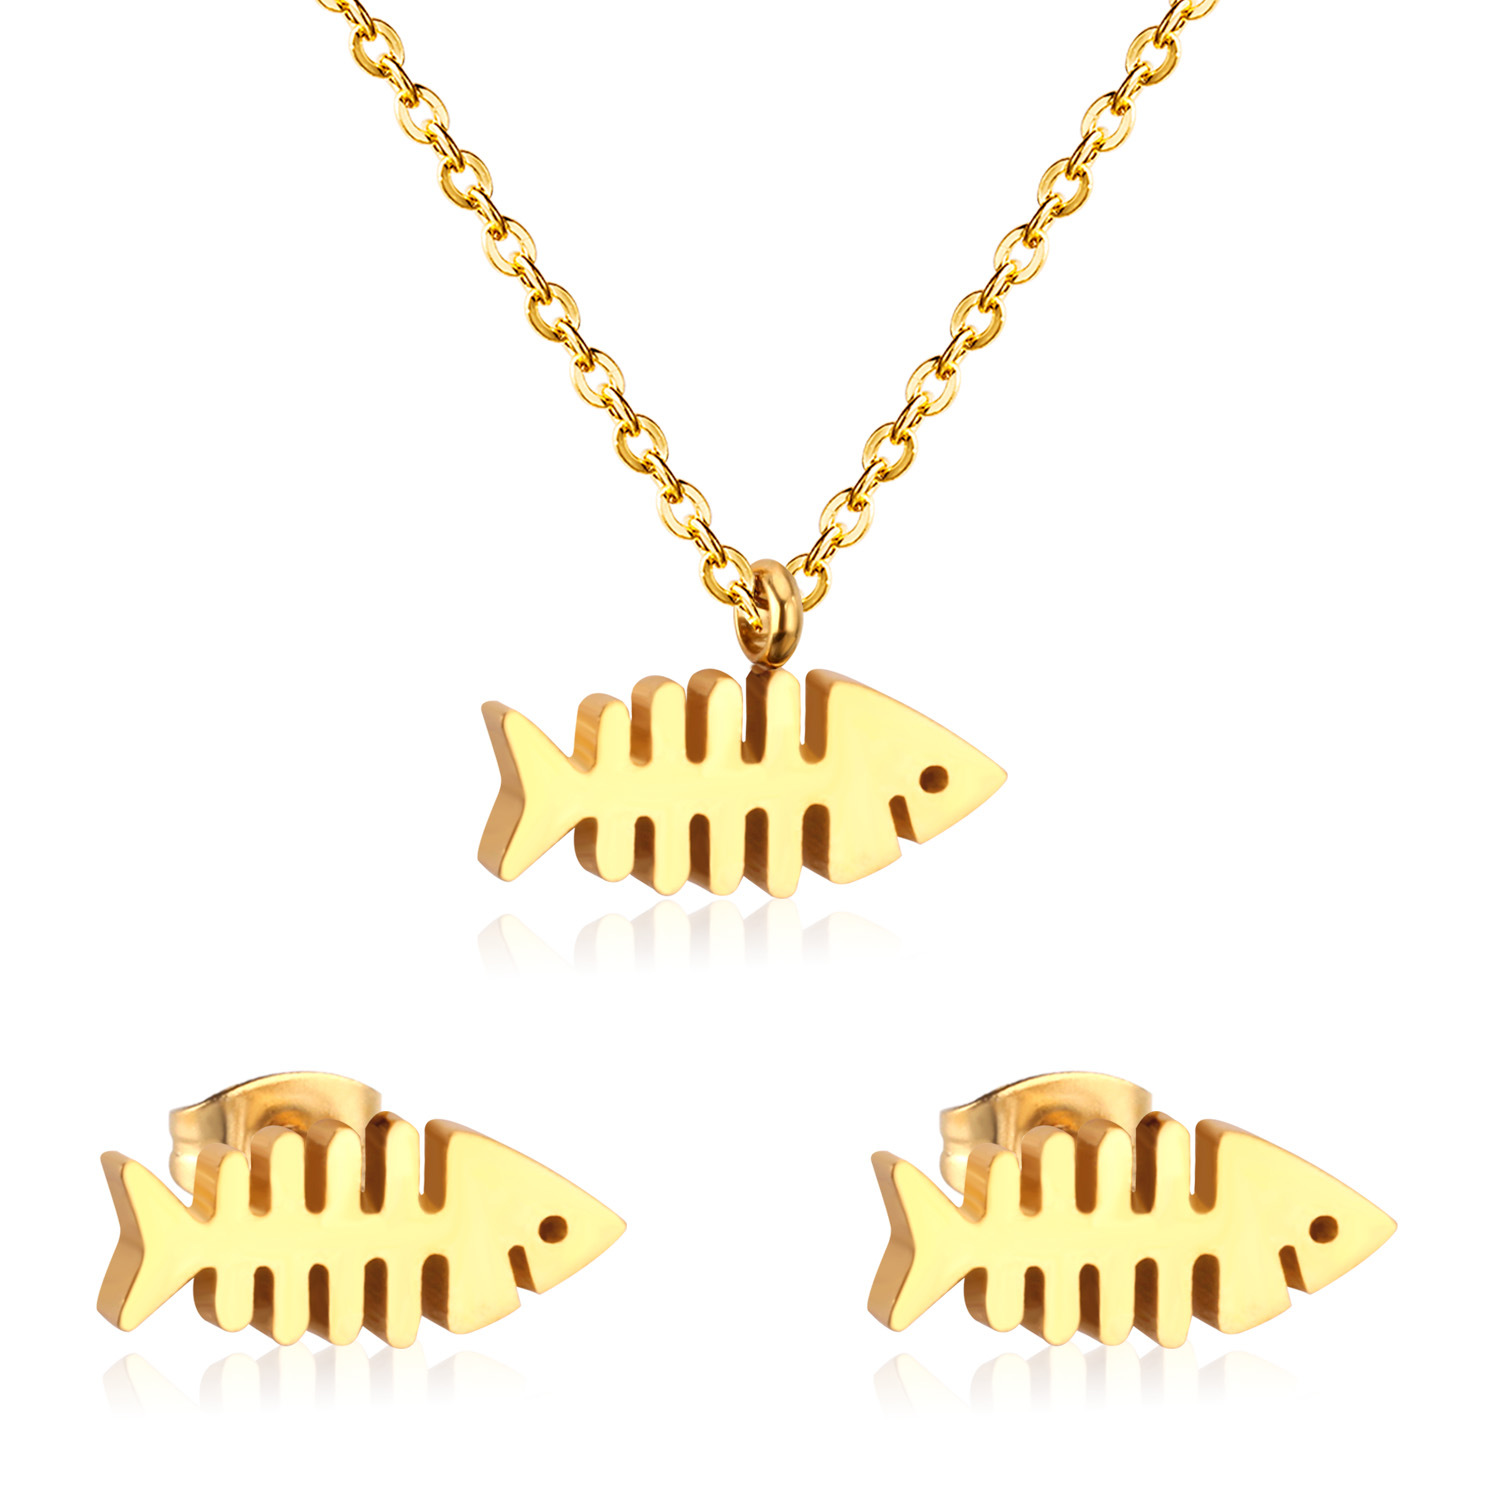 2:golden fish bone